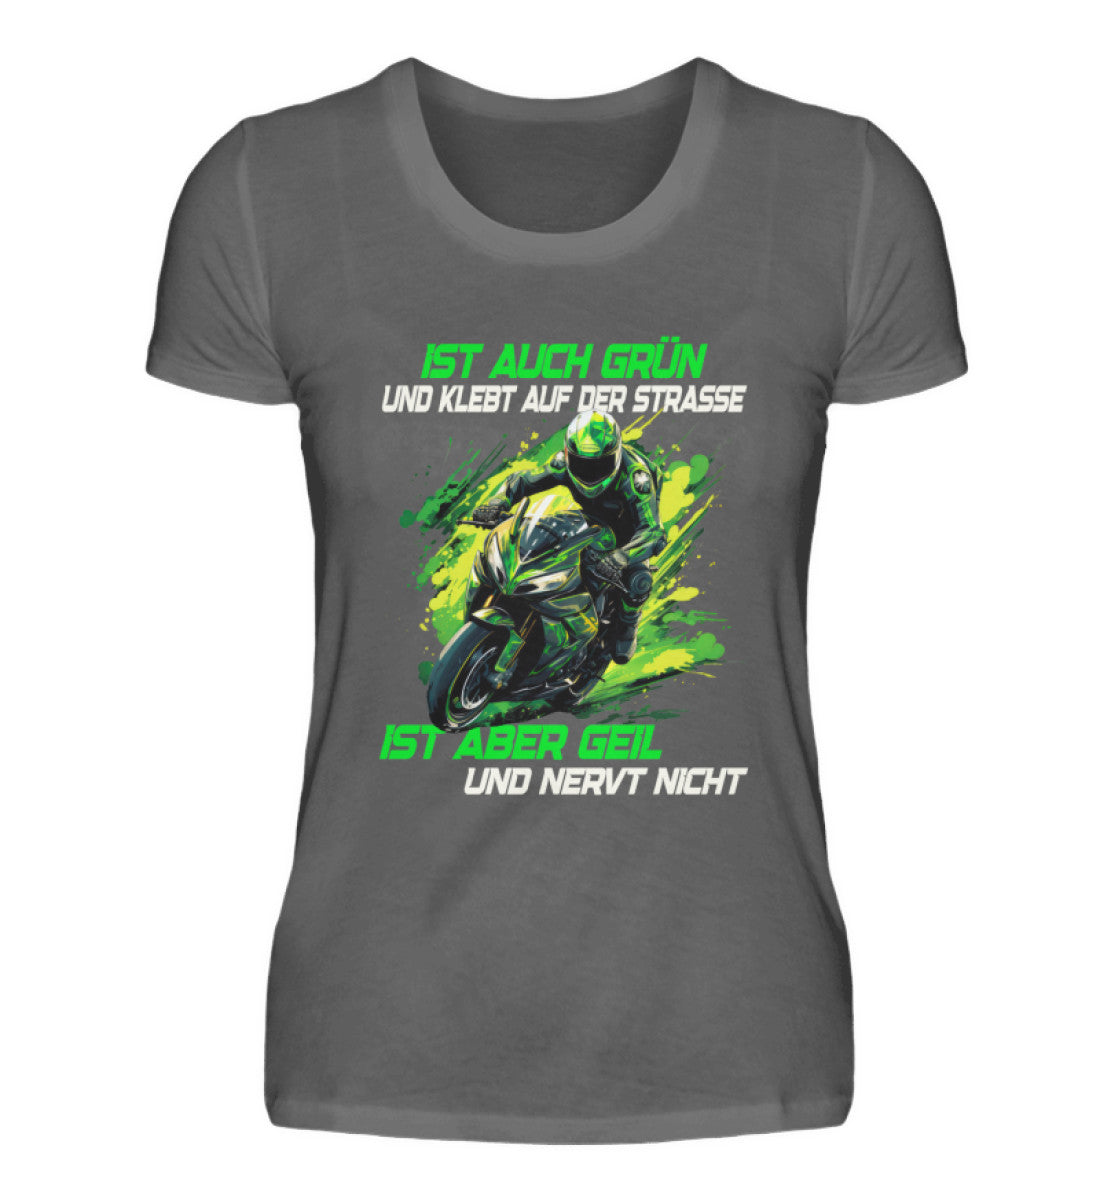 Ein T-Shirt für Motorradfahrerinnen von Wingbikers mit dem Aufdruck, Supersportler - Ist auch grün und klebt auf der Straße, ist aber geil und nervt nicht, in dunkelgrau.